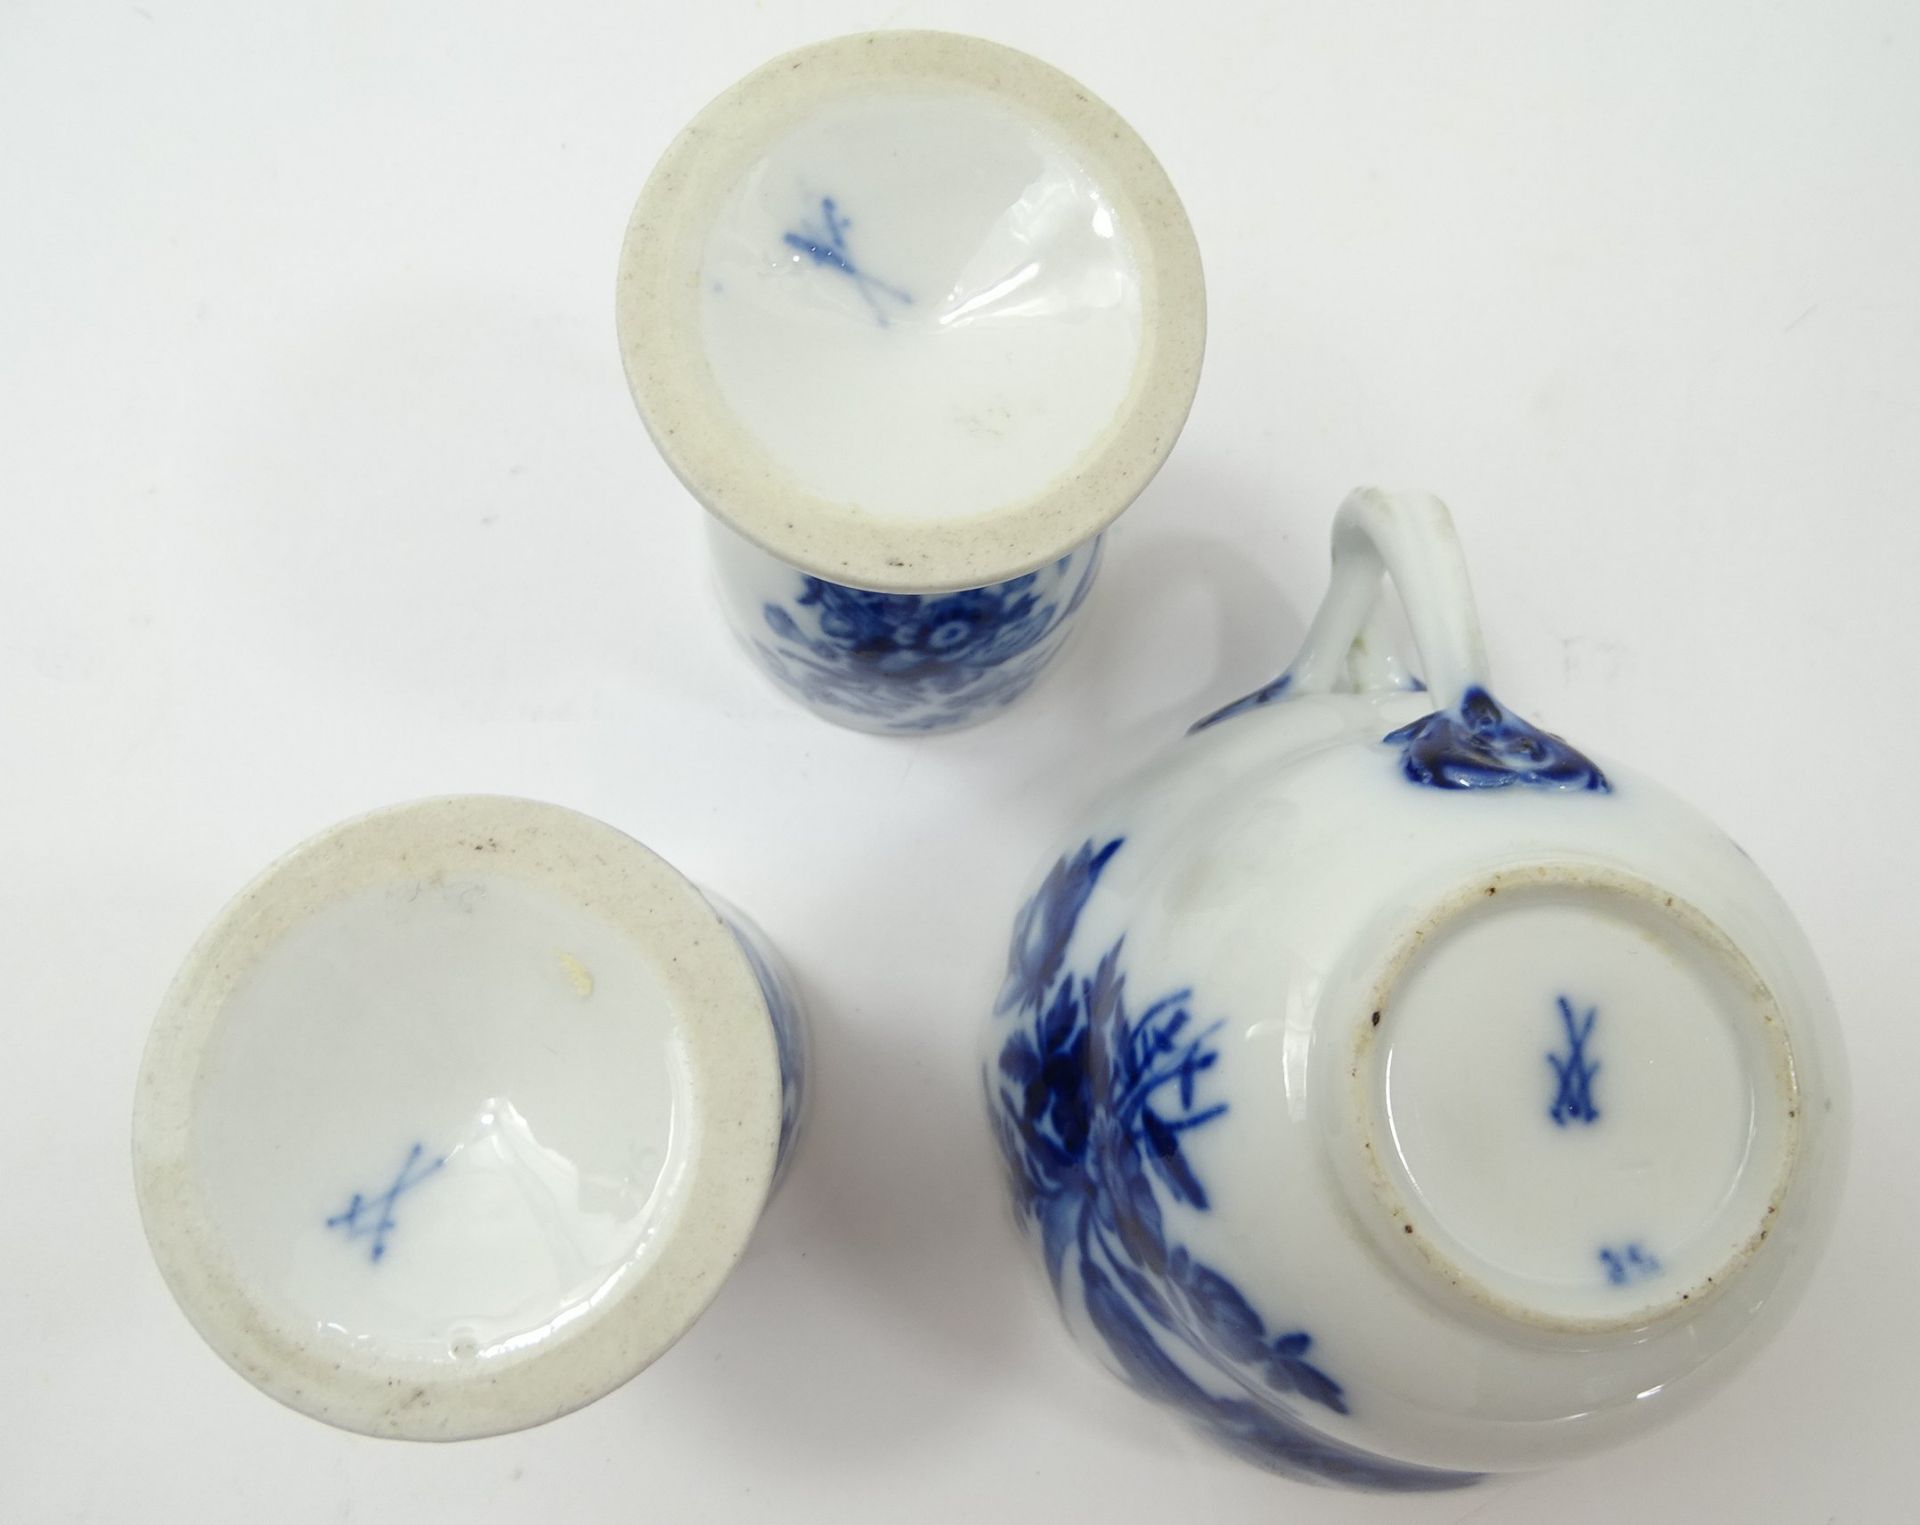 3 Teile altes Meissen-Porzellan, Tasse und 2 Eierbecher, "Blaue Blume", H. 6 und 7 cm, Tasse mit Ab - Bild 4 aus 6